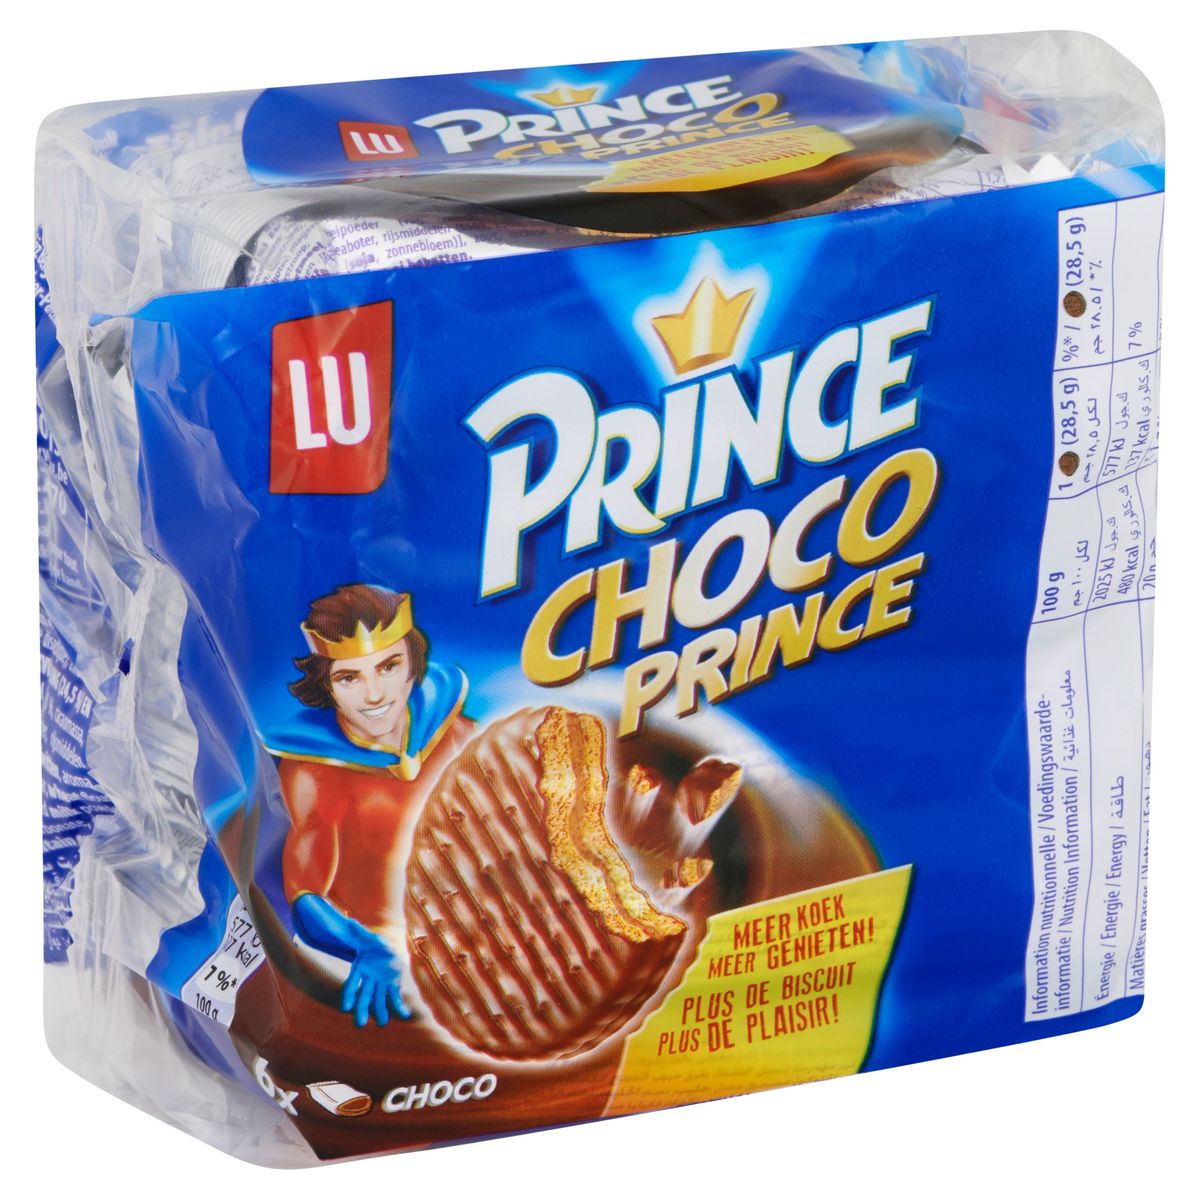 LU Prince Choco Prince Koekjes Chocolade 171 g